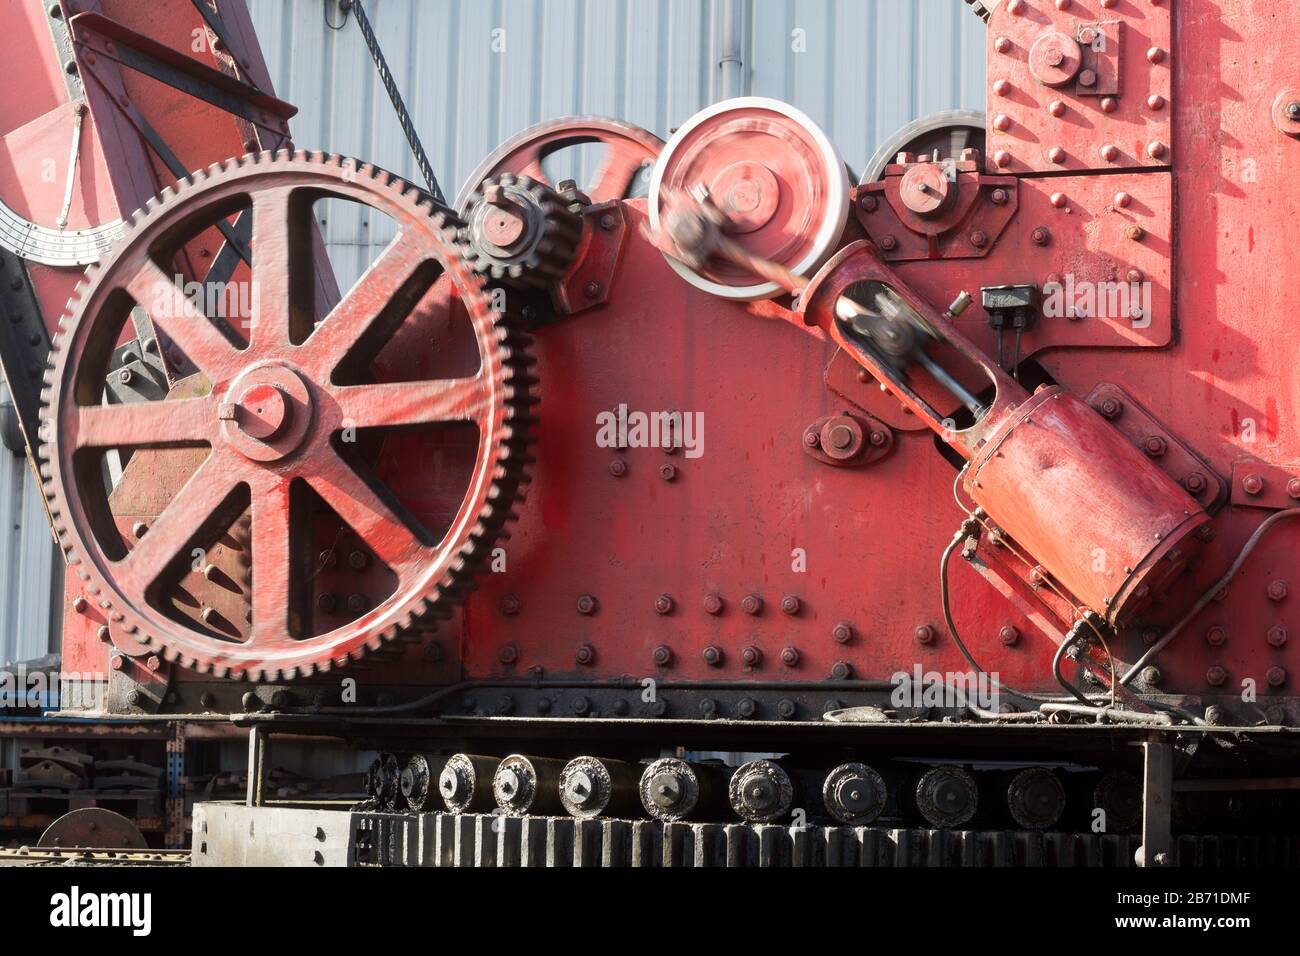 Gros plan du mécanisme d'une grue à vapeur sur le NYMR à Grossmont, North Yorkshire, Angleterre, Royaume-Uni Banque D'Images